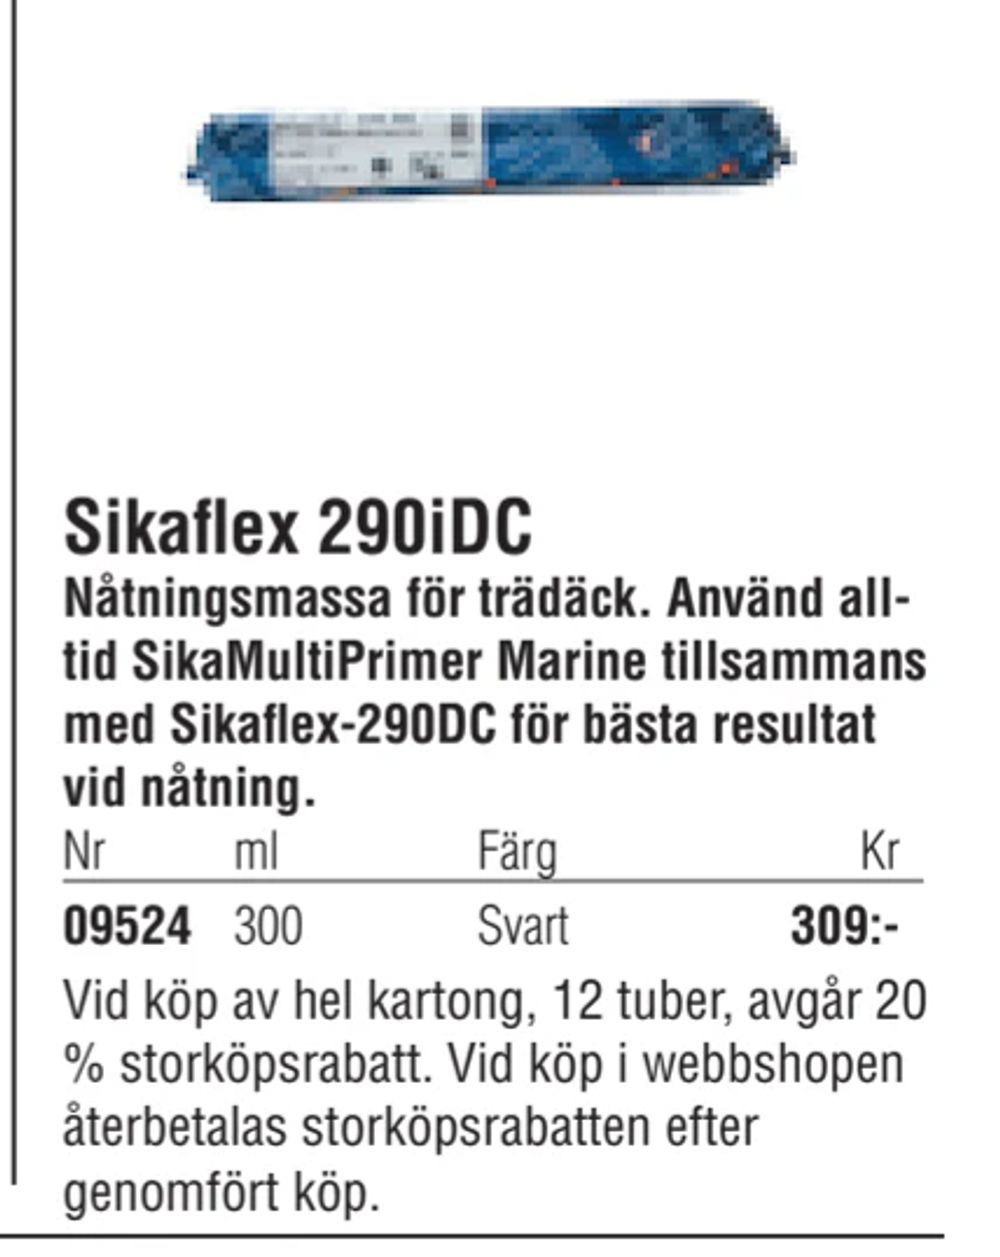 Erbjudanden på Sikaflex 290iDC från Erlandsons Brygga för 309 kr